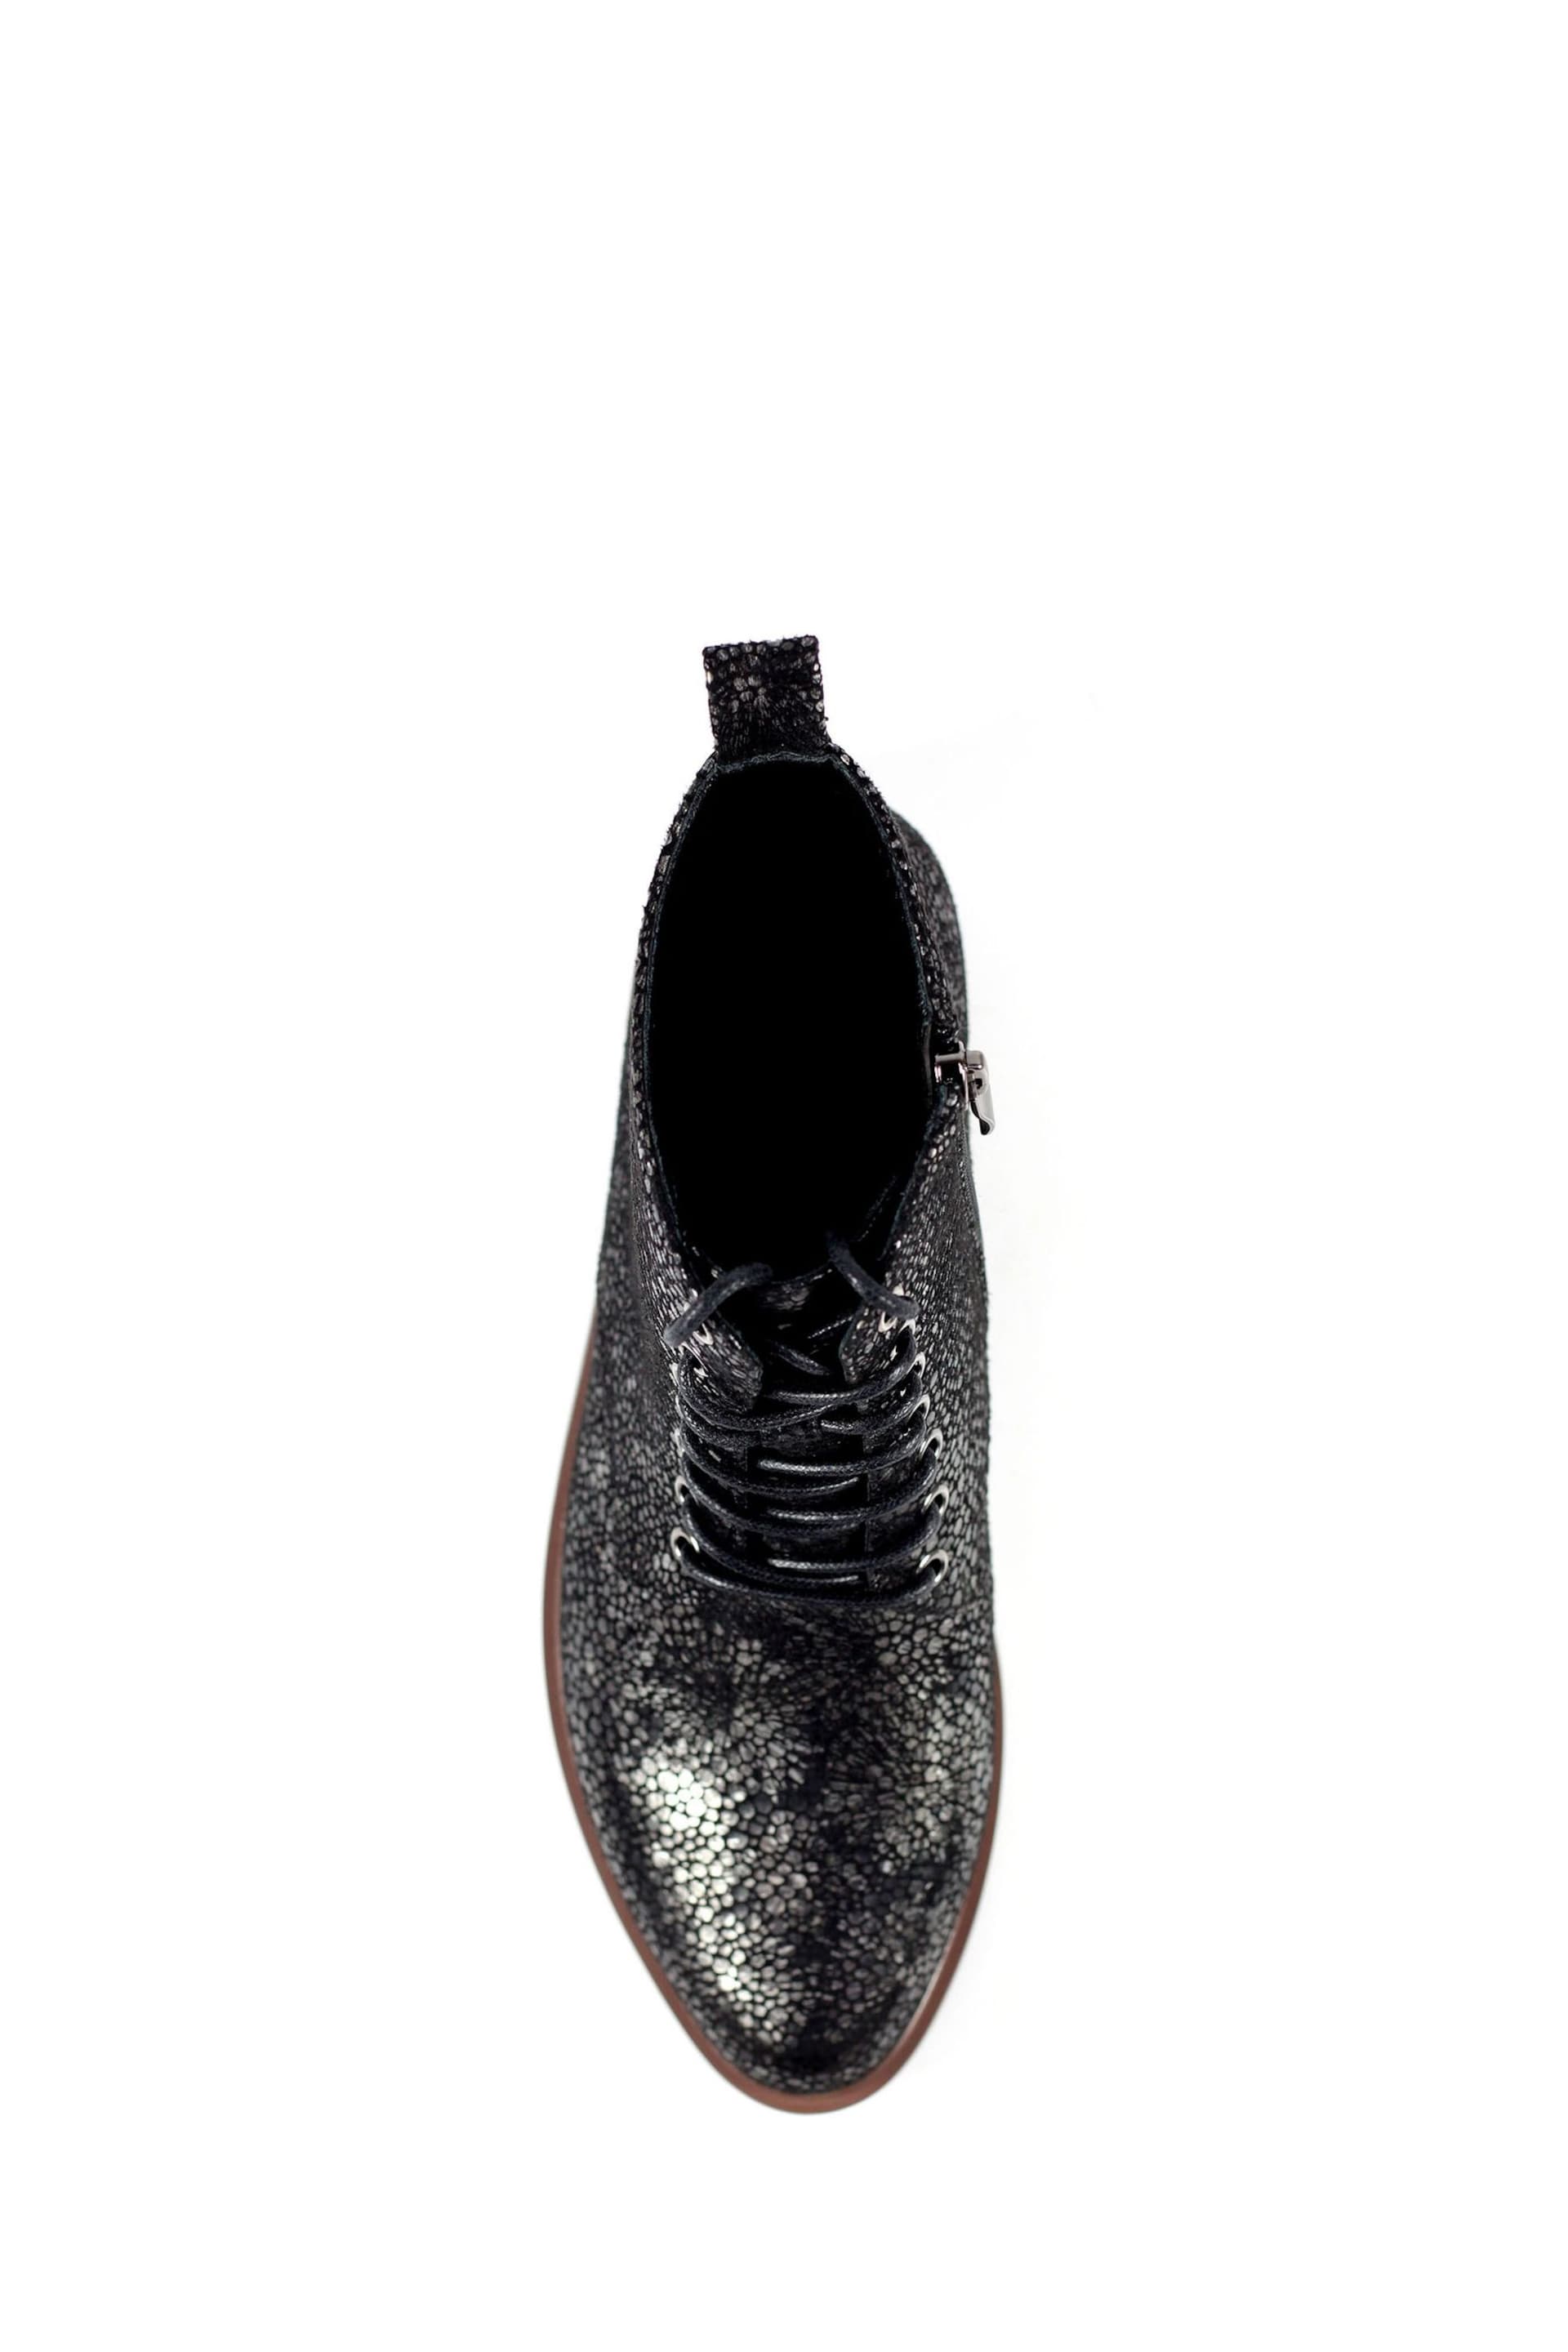 Lunar Caliban Black Ankle Boots - Image 7 of 9